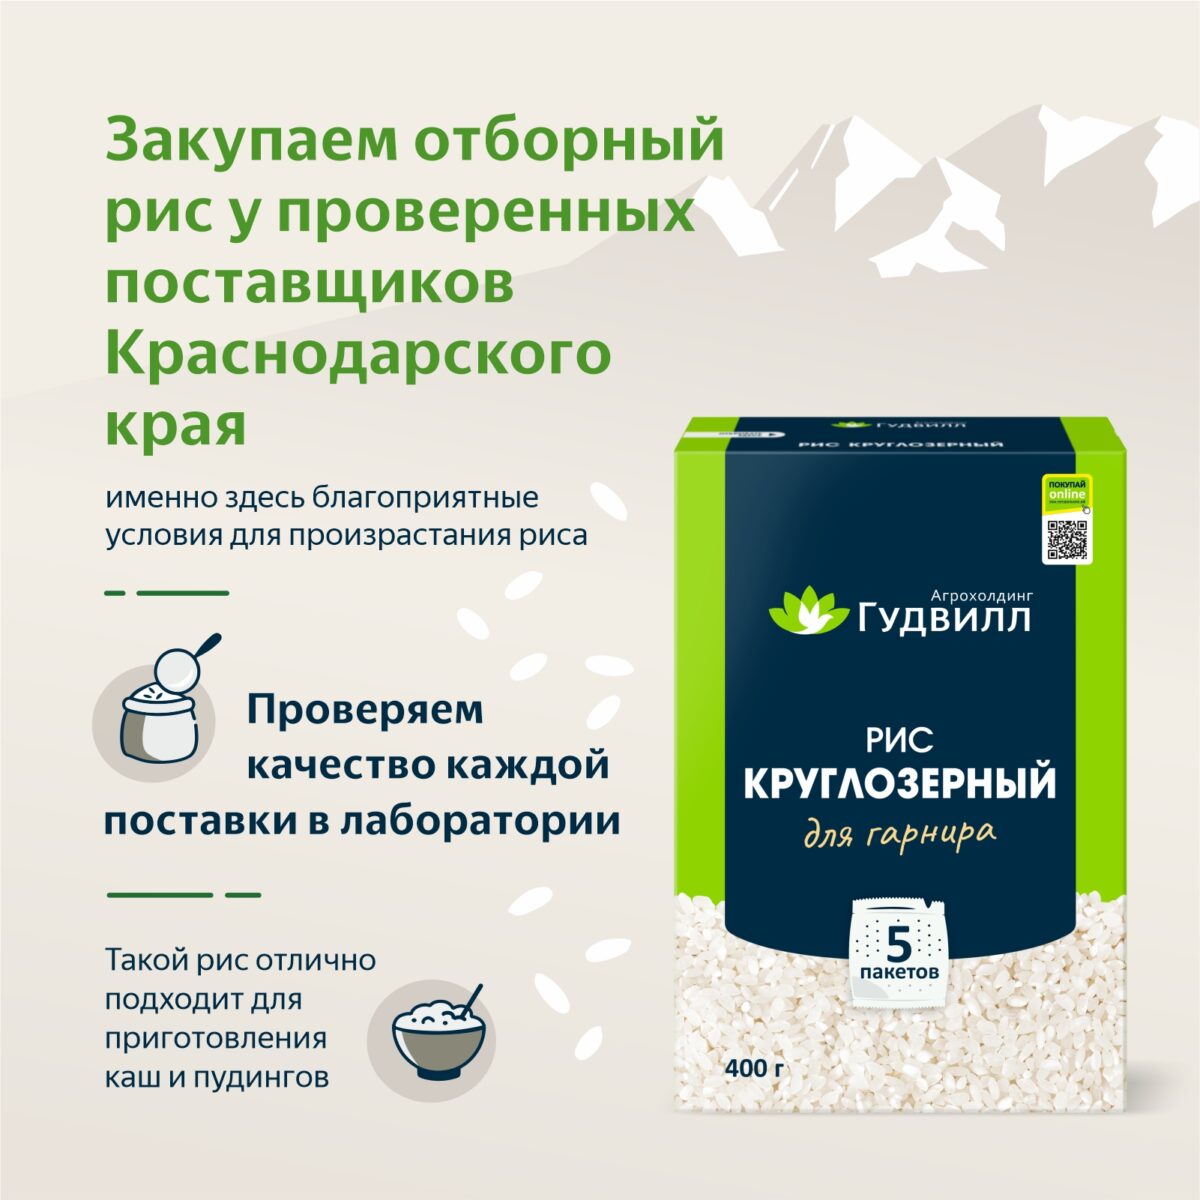 Рис круглозерный в варочных пакетах 400 гр. Алтайские крупы - Интернет-магазин